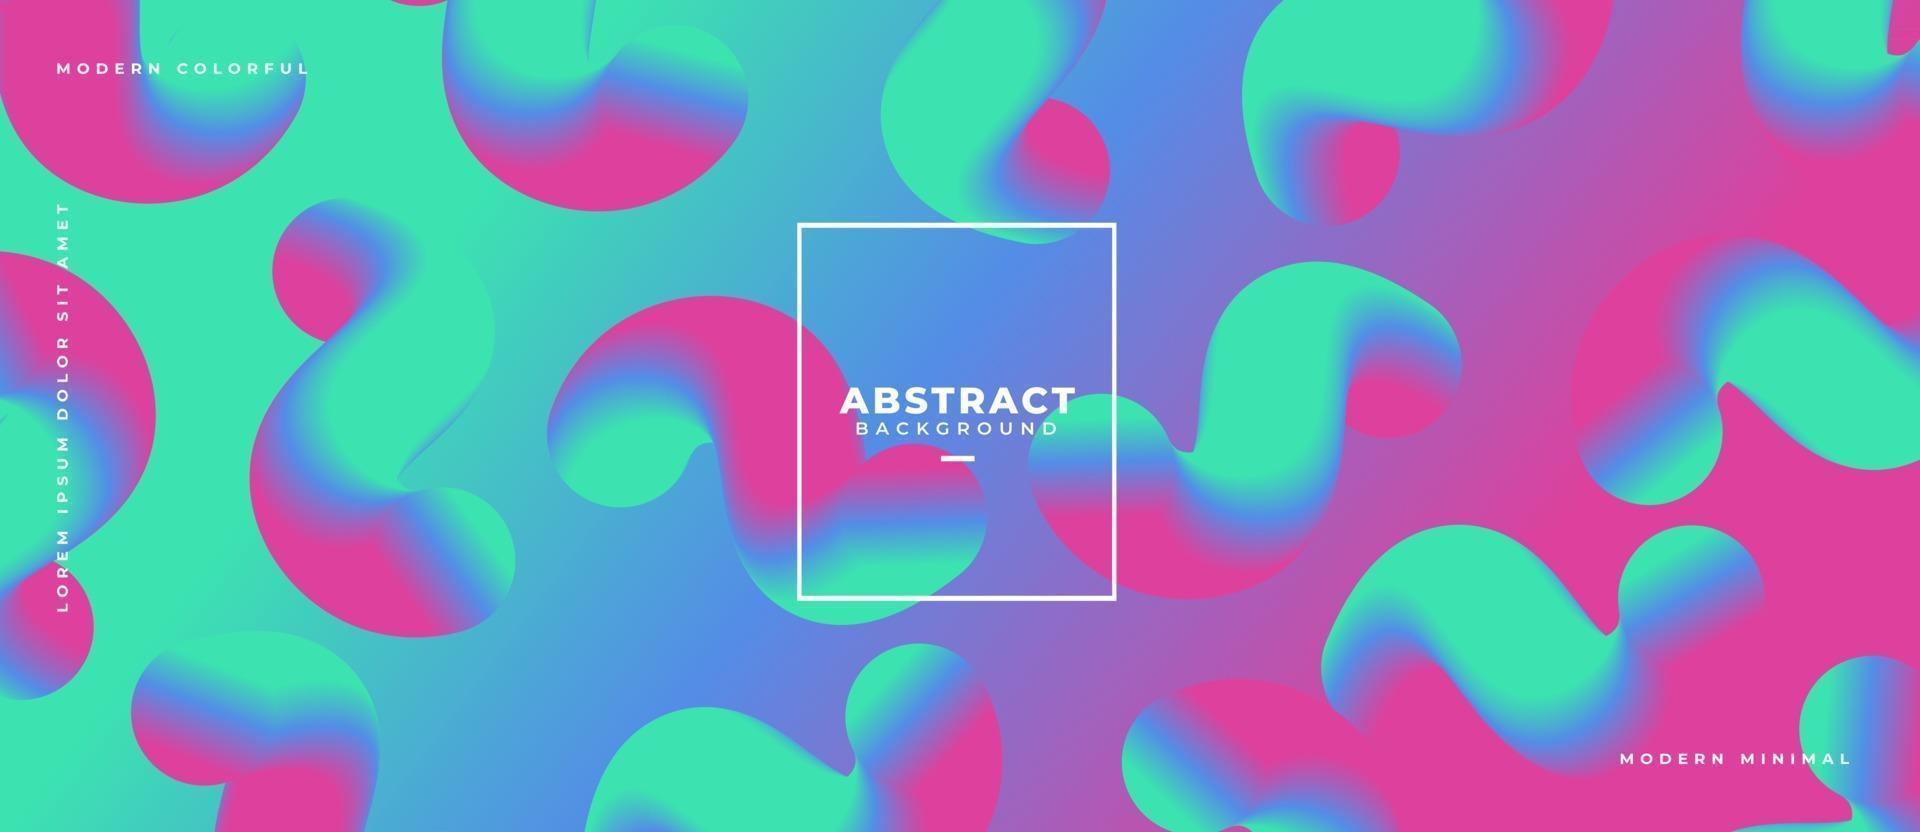 abstracte 3d golf stromende groep vormen op vloeibare dynamische achtergrond met kleurovergang vector